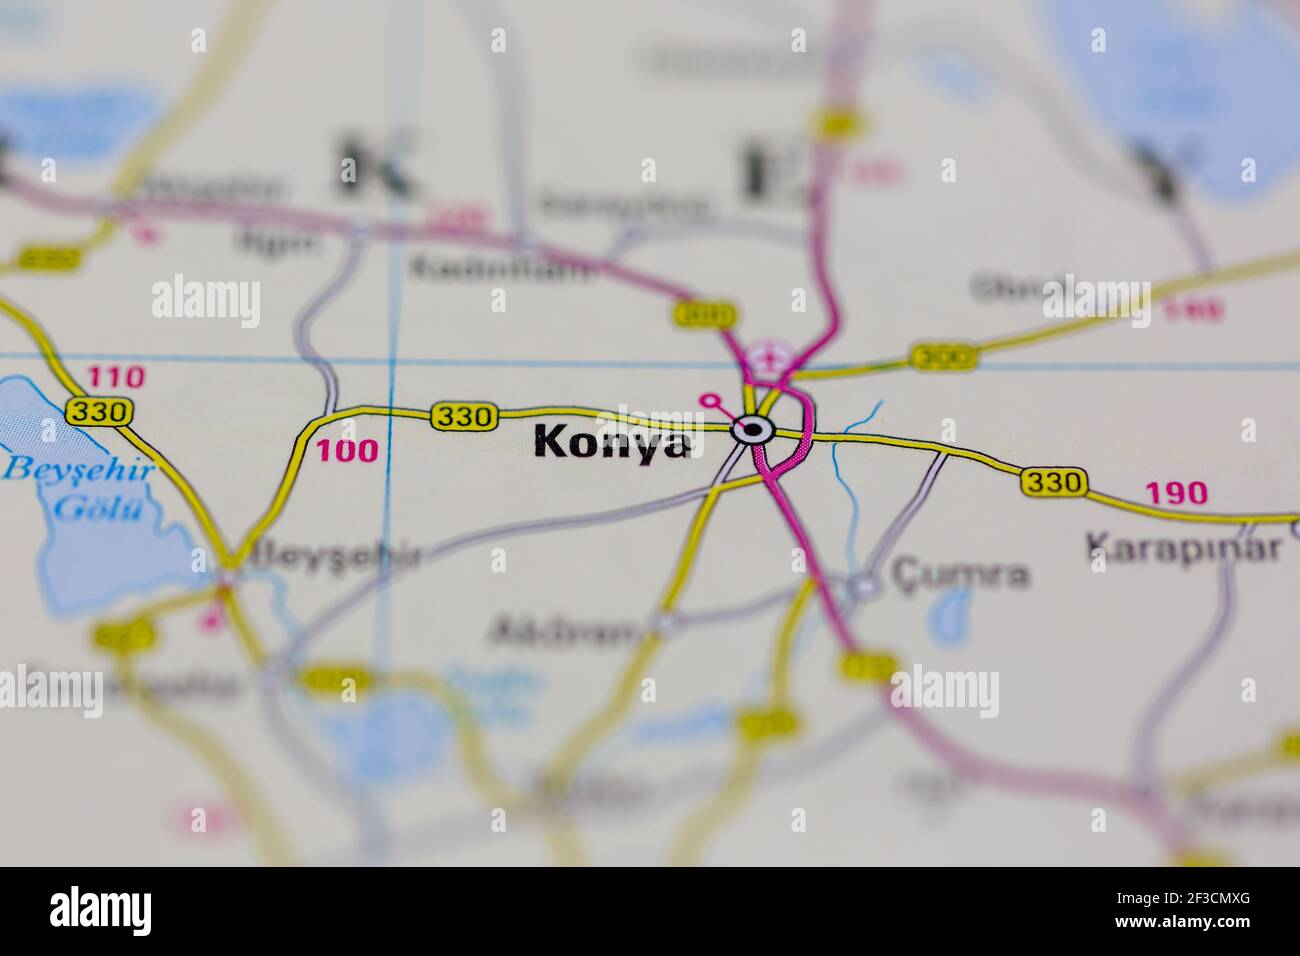 Konya sur une carte géographique ou une carte routière Banque D'Images